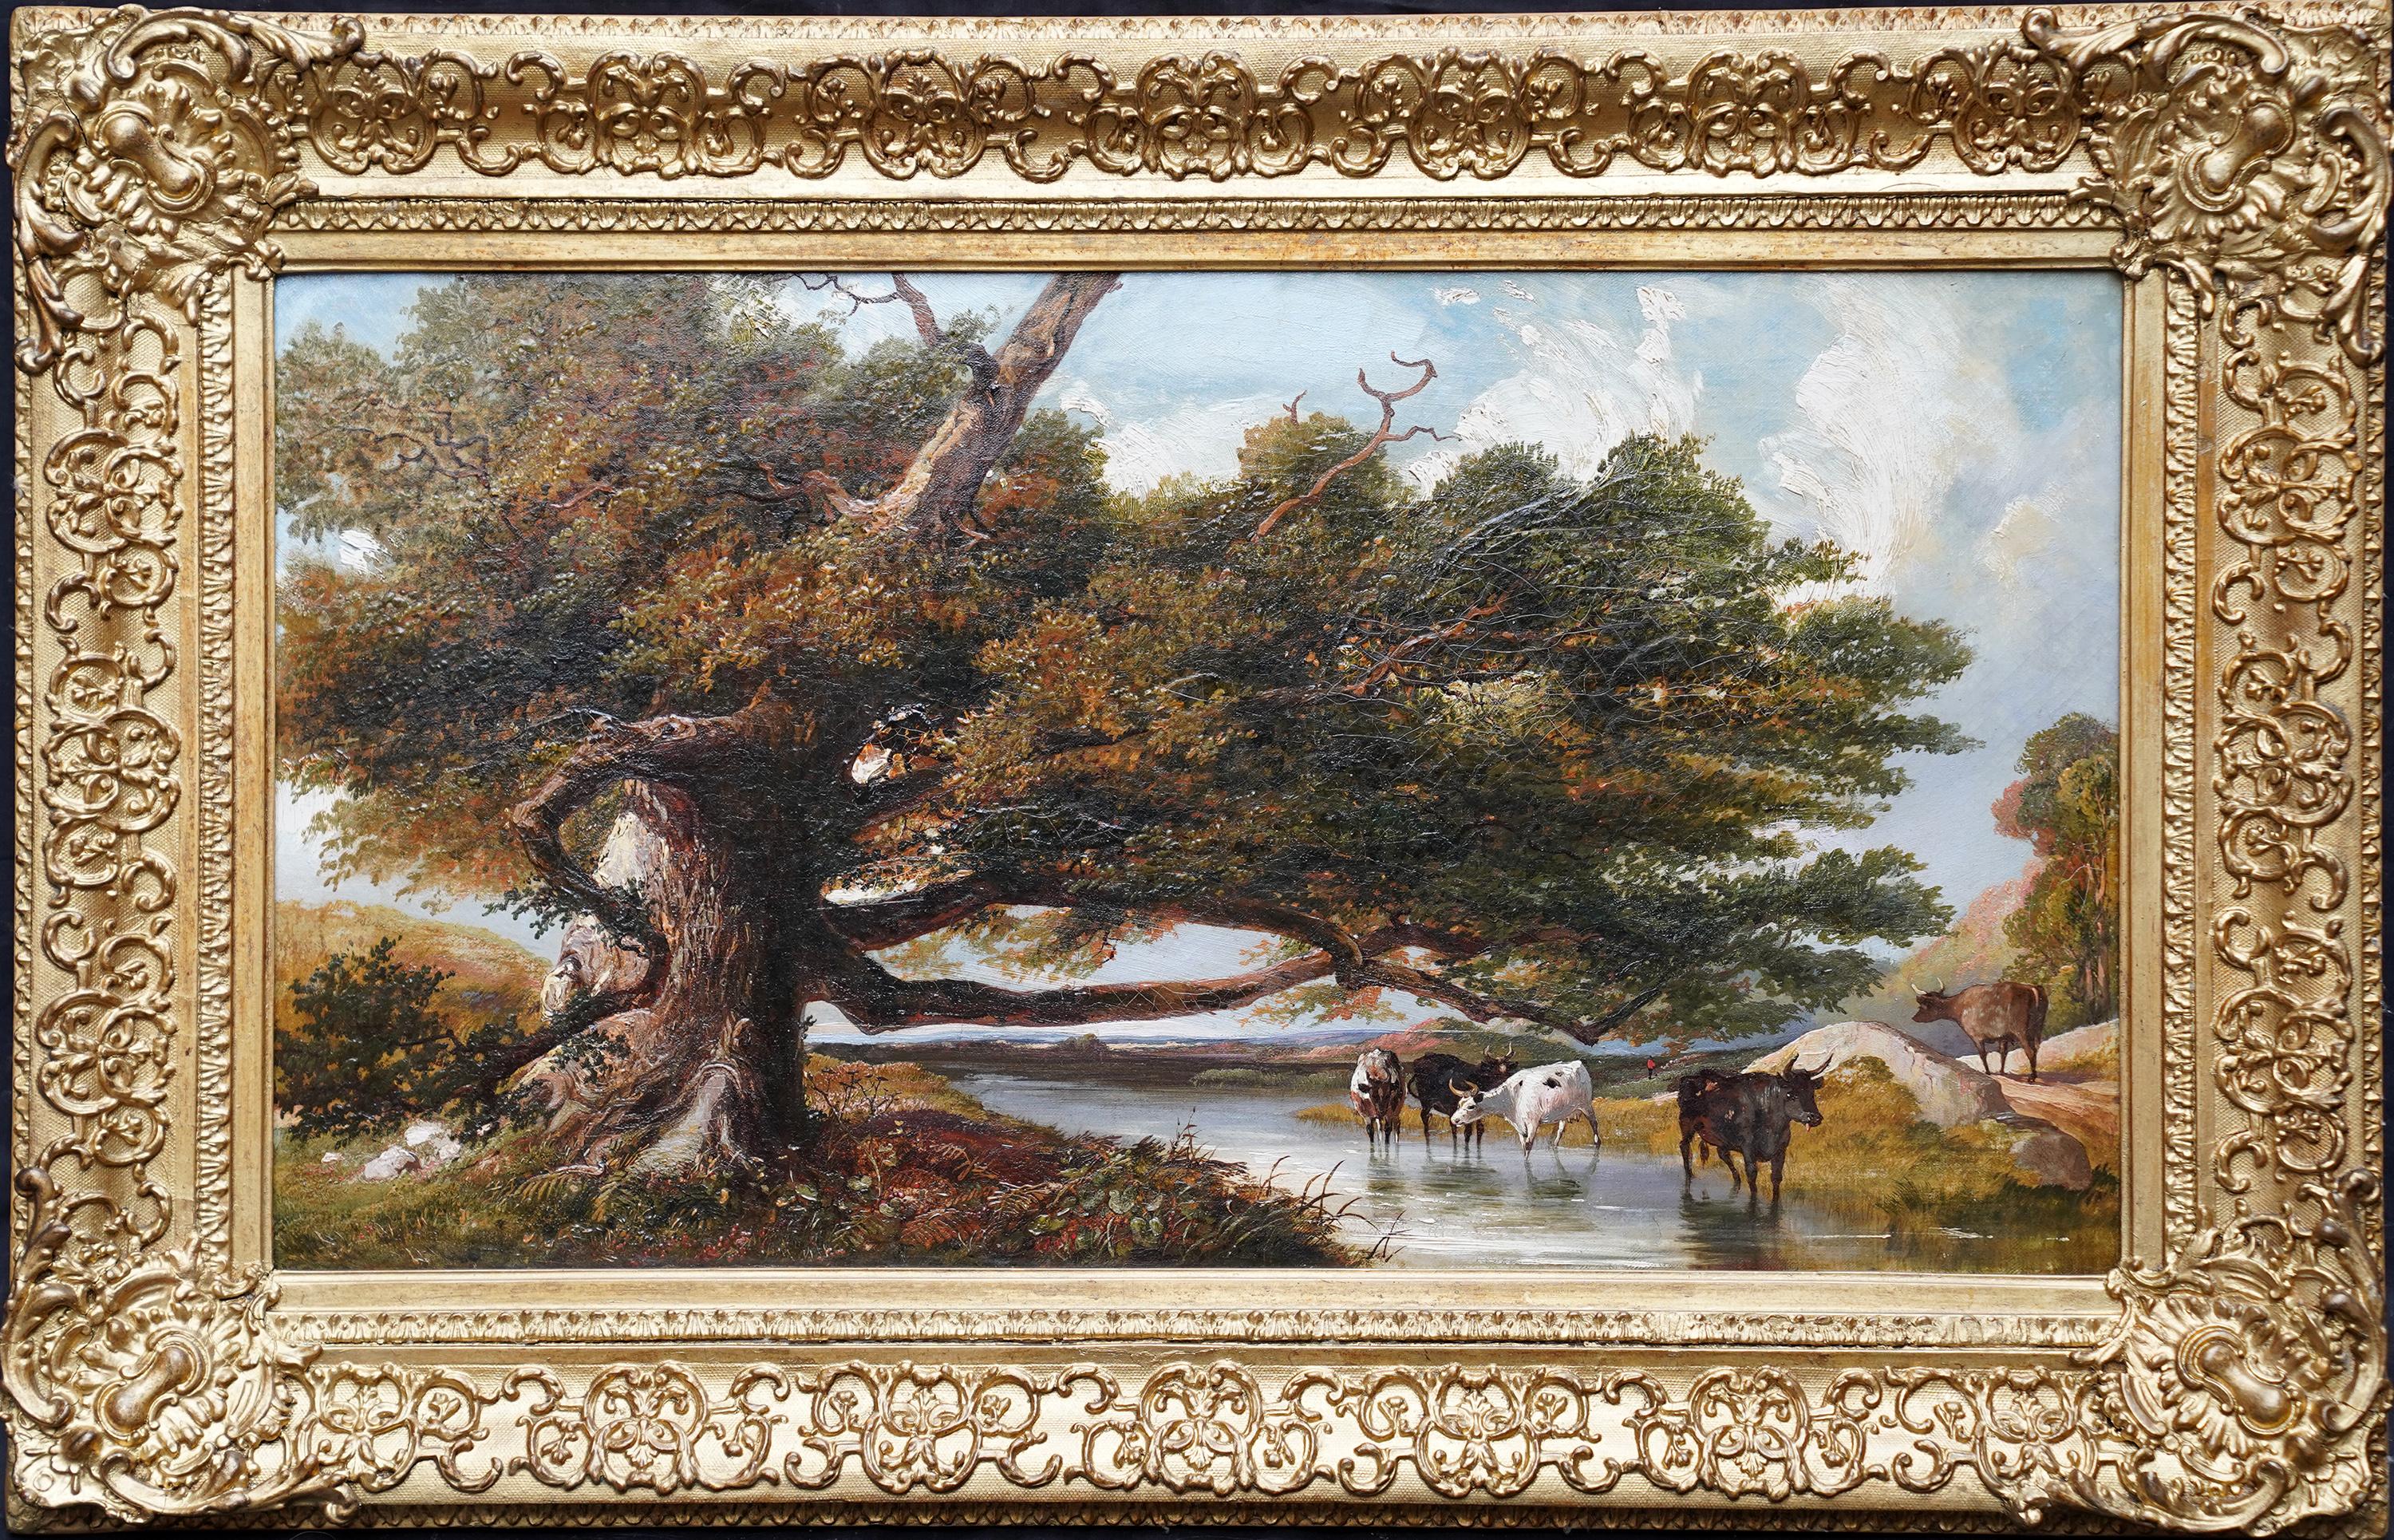 Rinder watering in a Landscape – britisches viktorianisches Ölgemälde des 19. Jahrhunderts